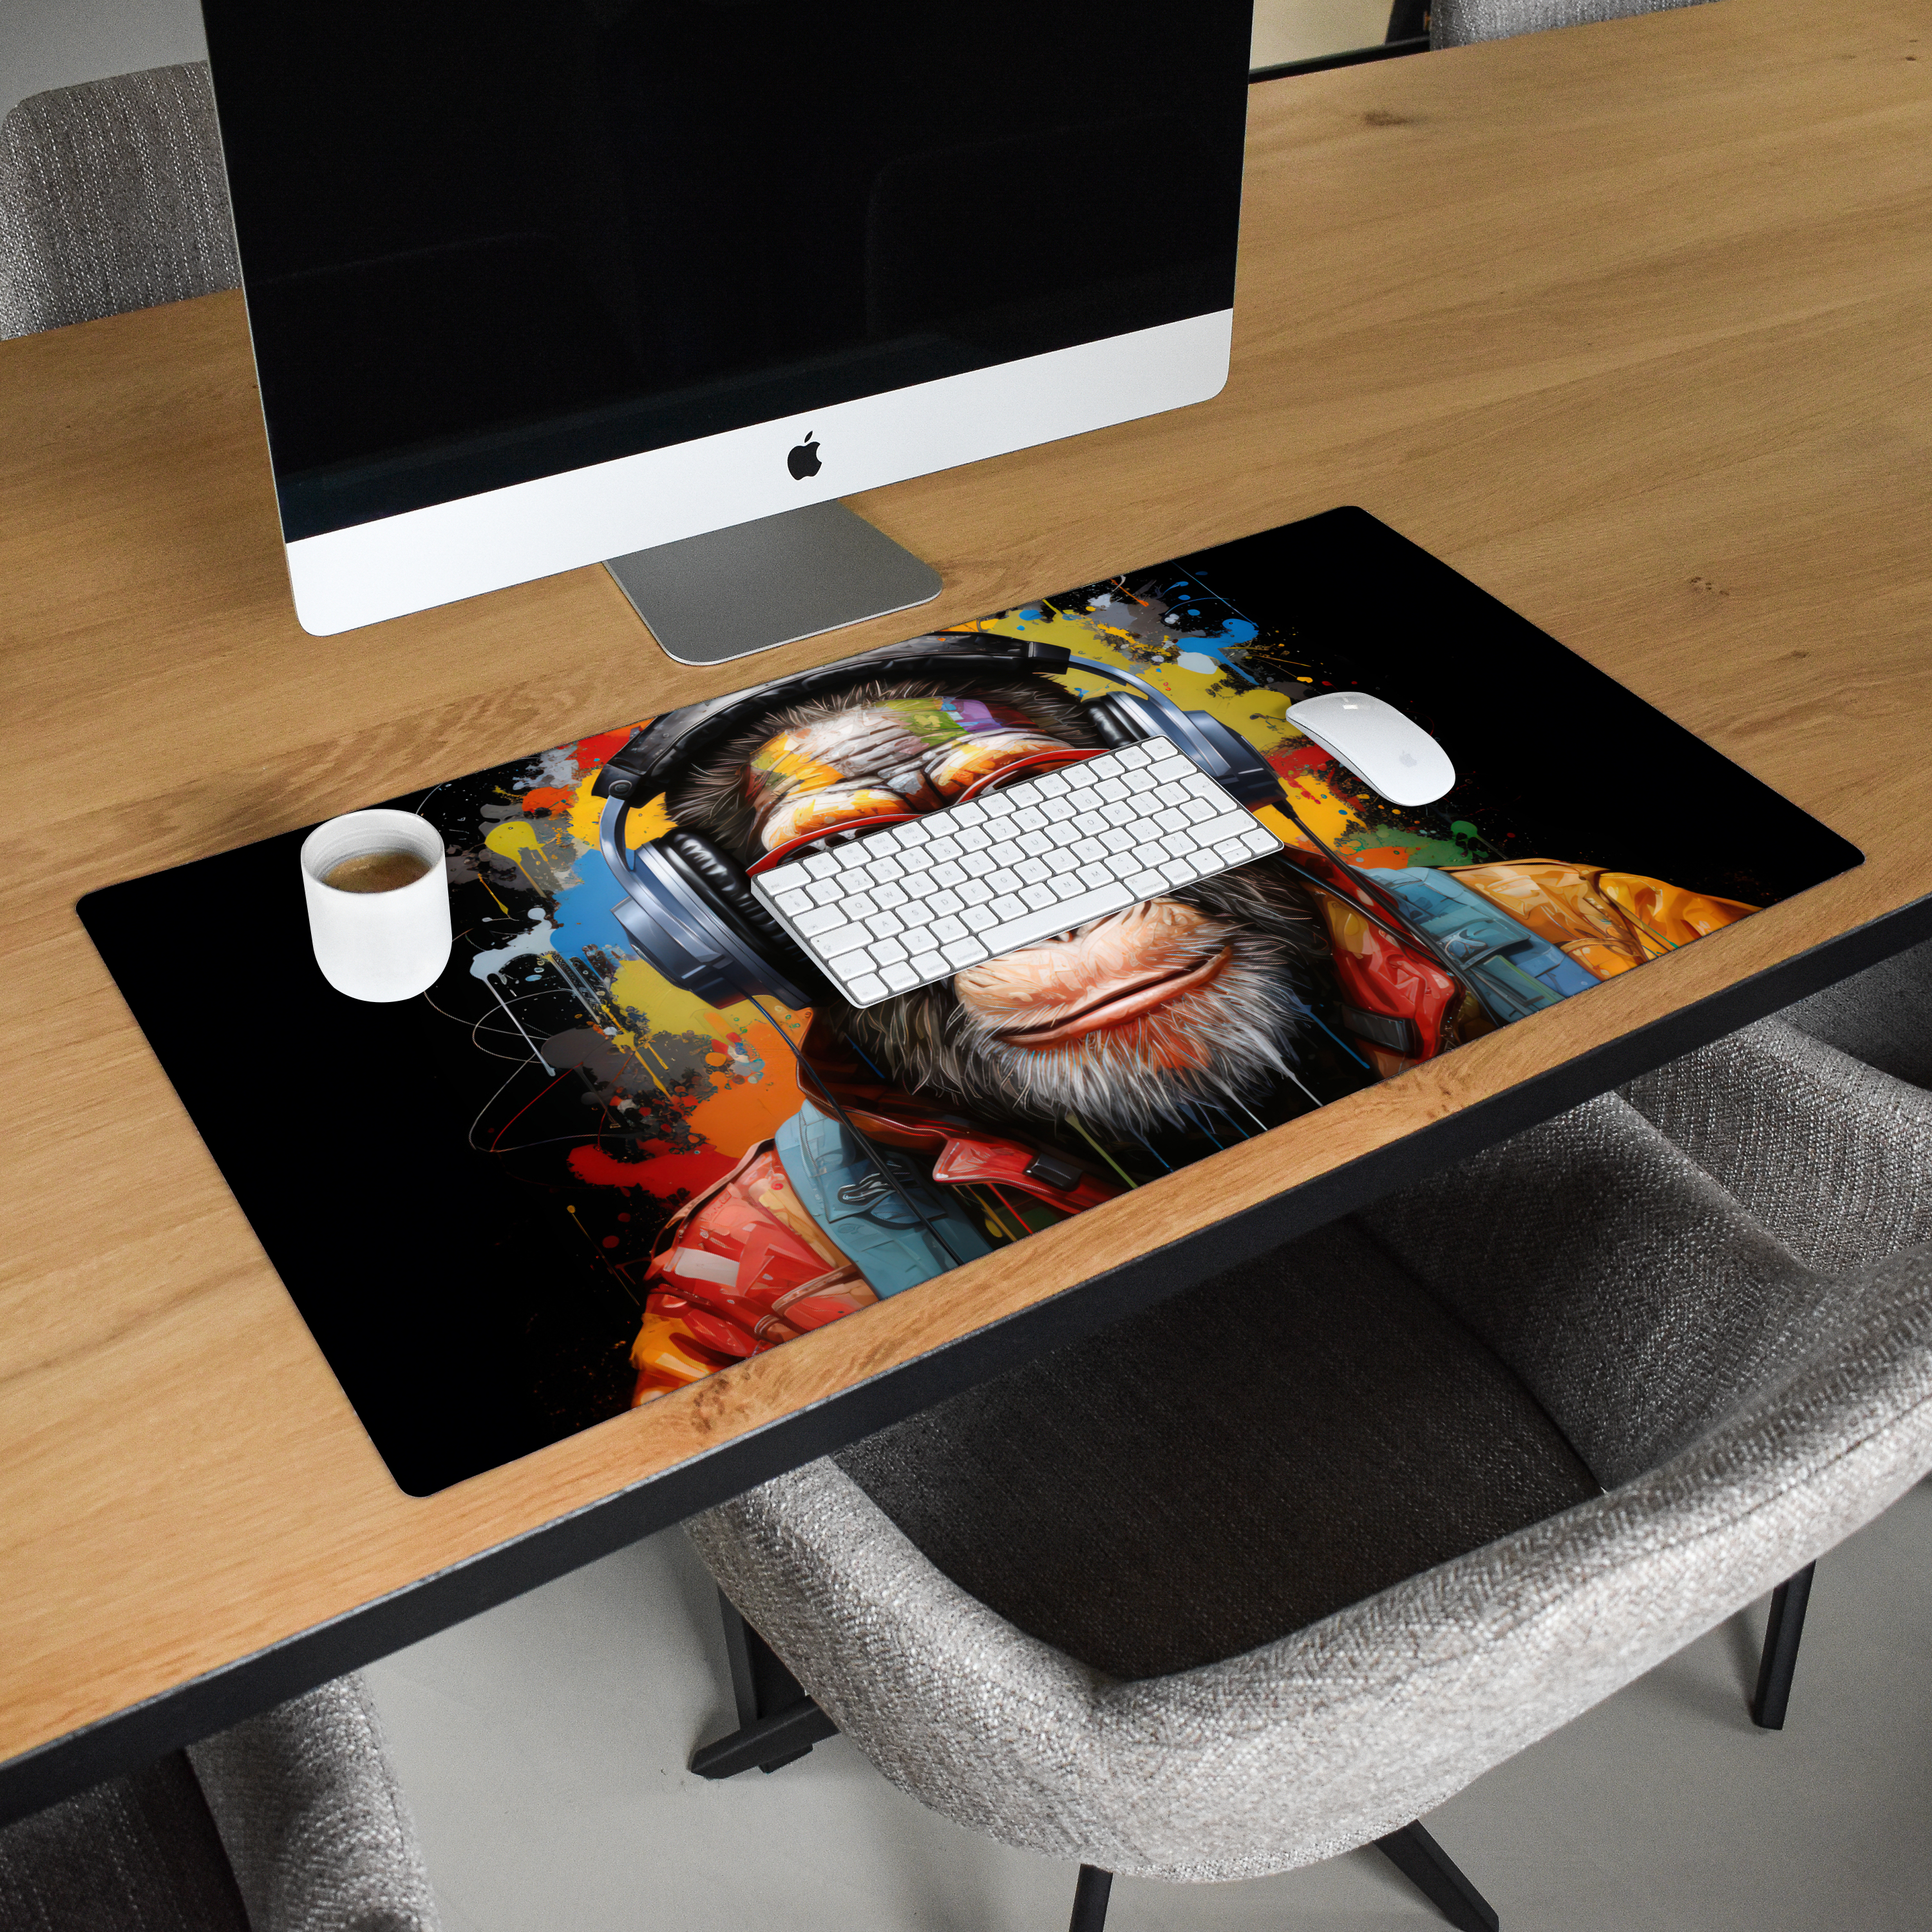 Schreibtischunterlage - Schimpanse - Affe - Tiere - Graffiti - Brille - Kopfhörer - Farben-2